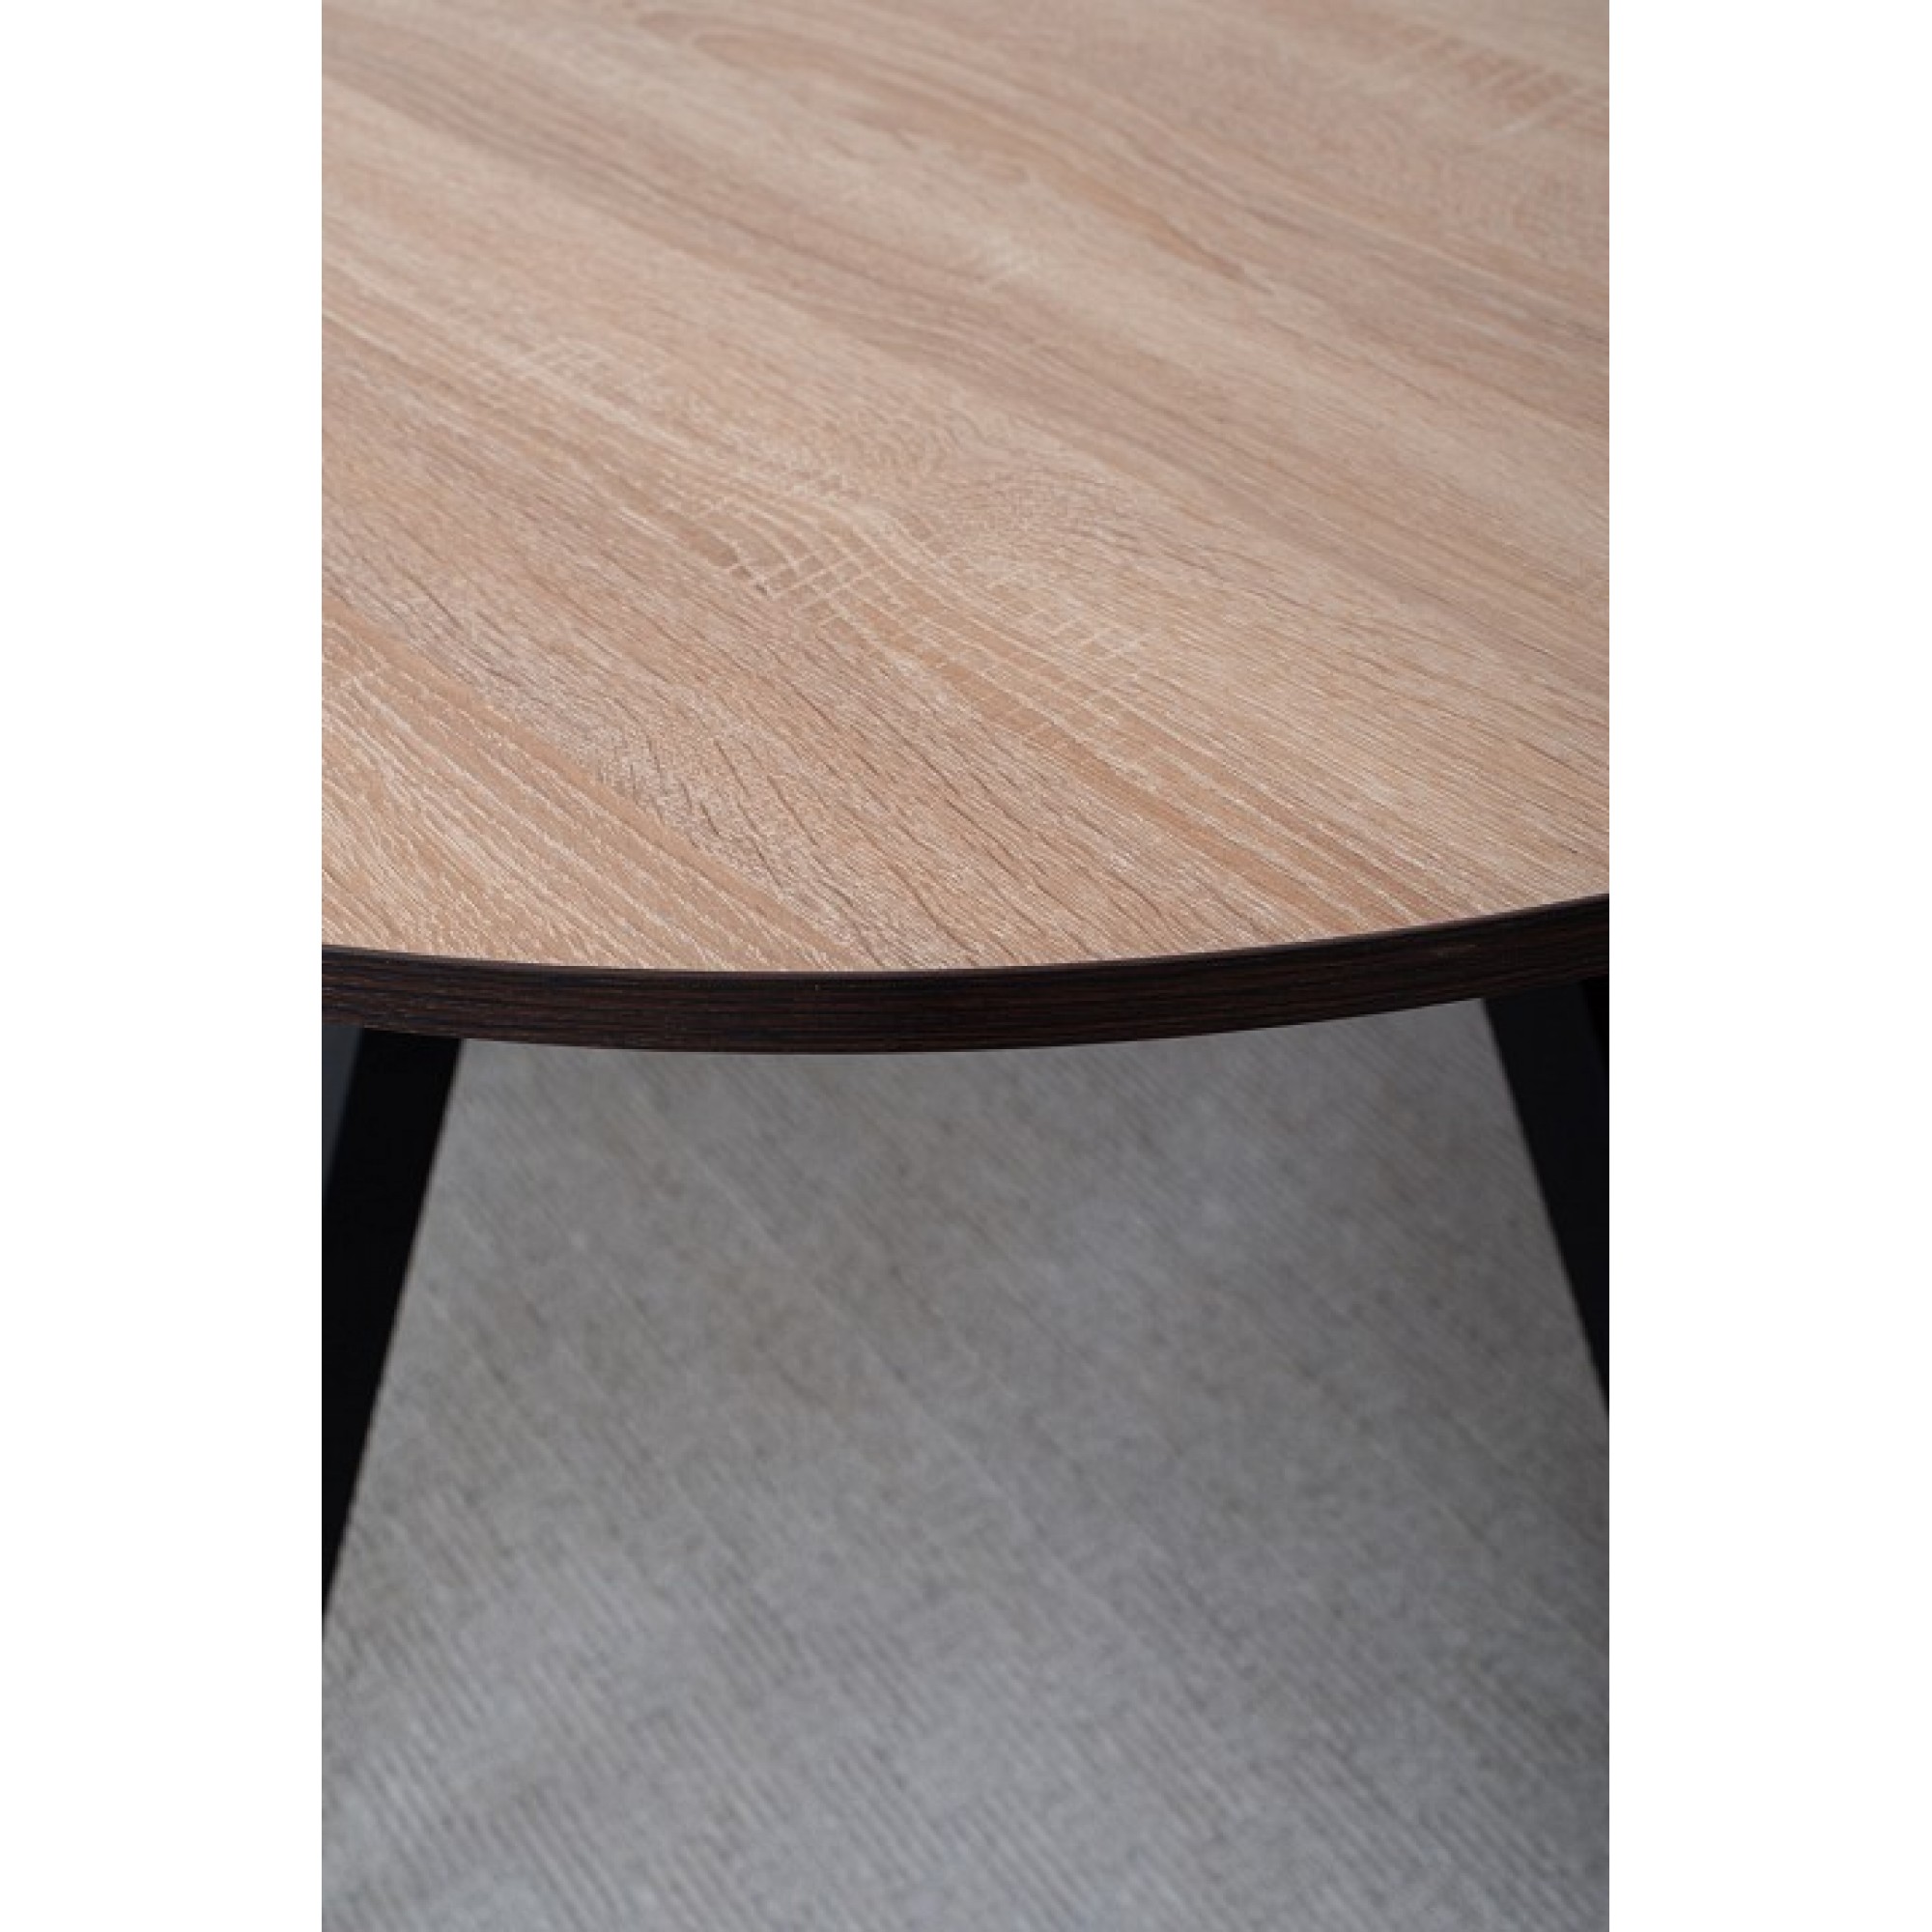 Стол обеденный Дельта К-1 древесина коричневая светлая орех DOM_Delta_K-1_OS_94_CHR